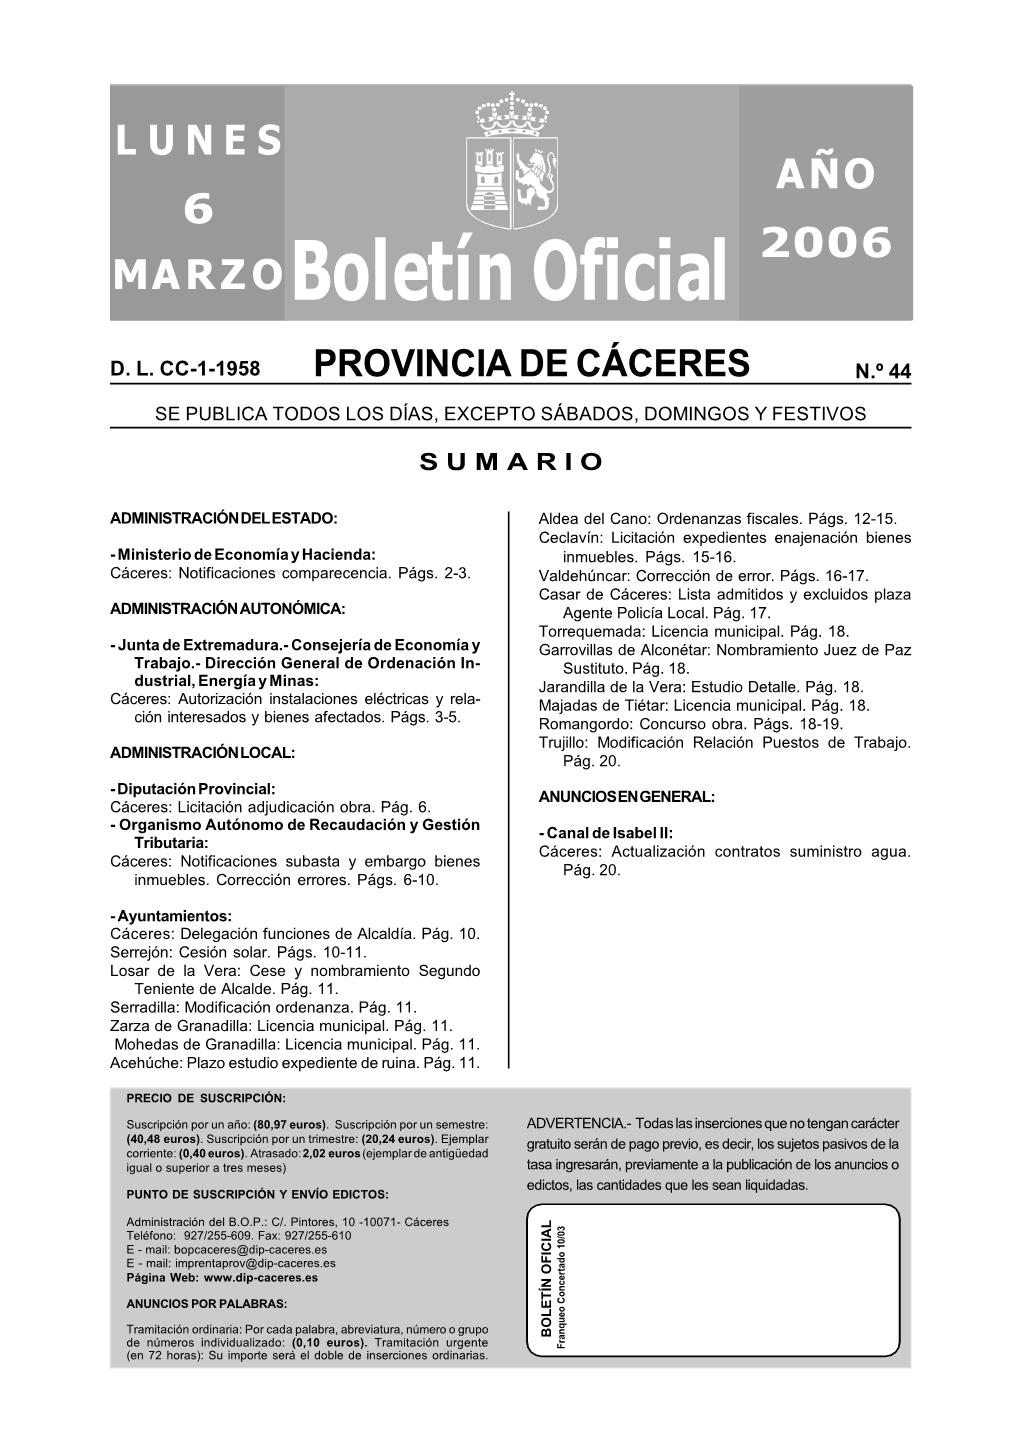 Boletín Oficial LUNES AÑO 2006